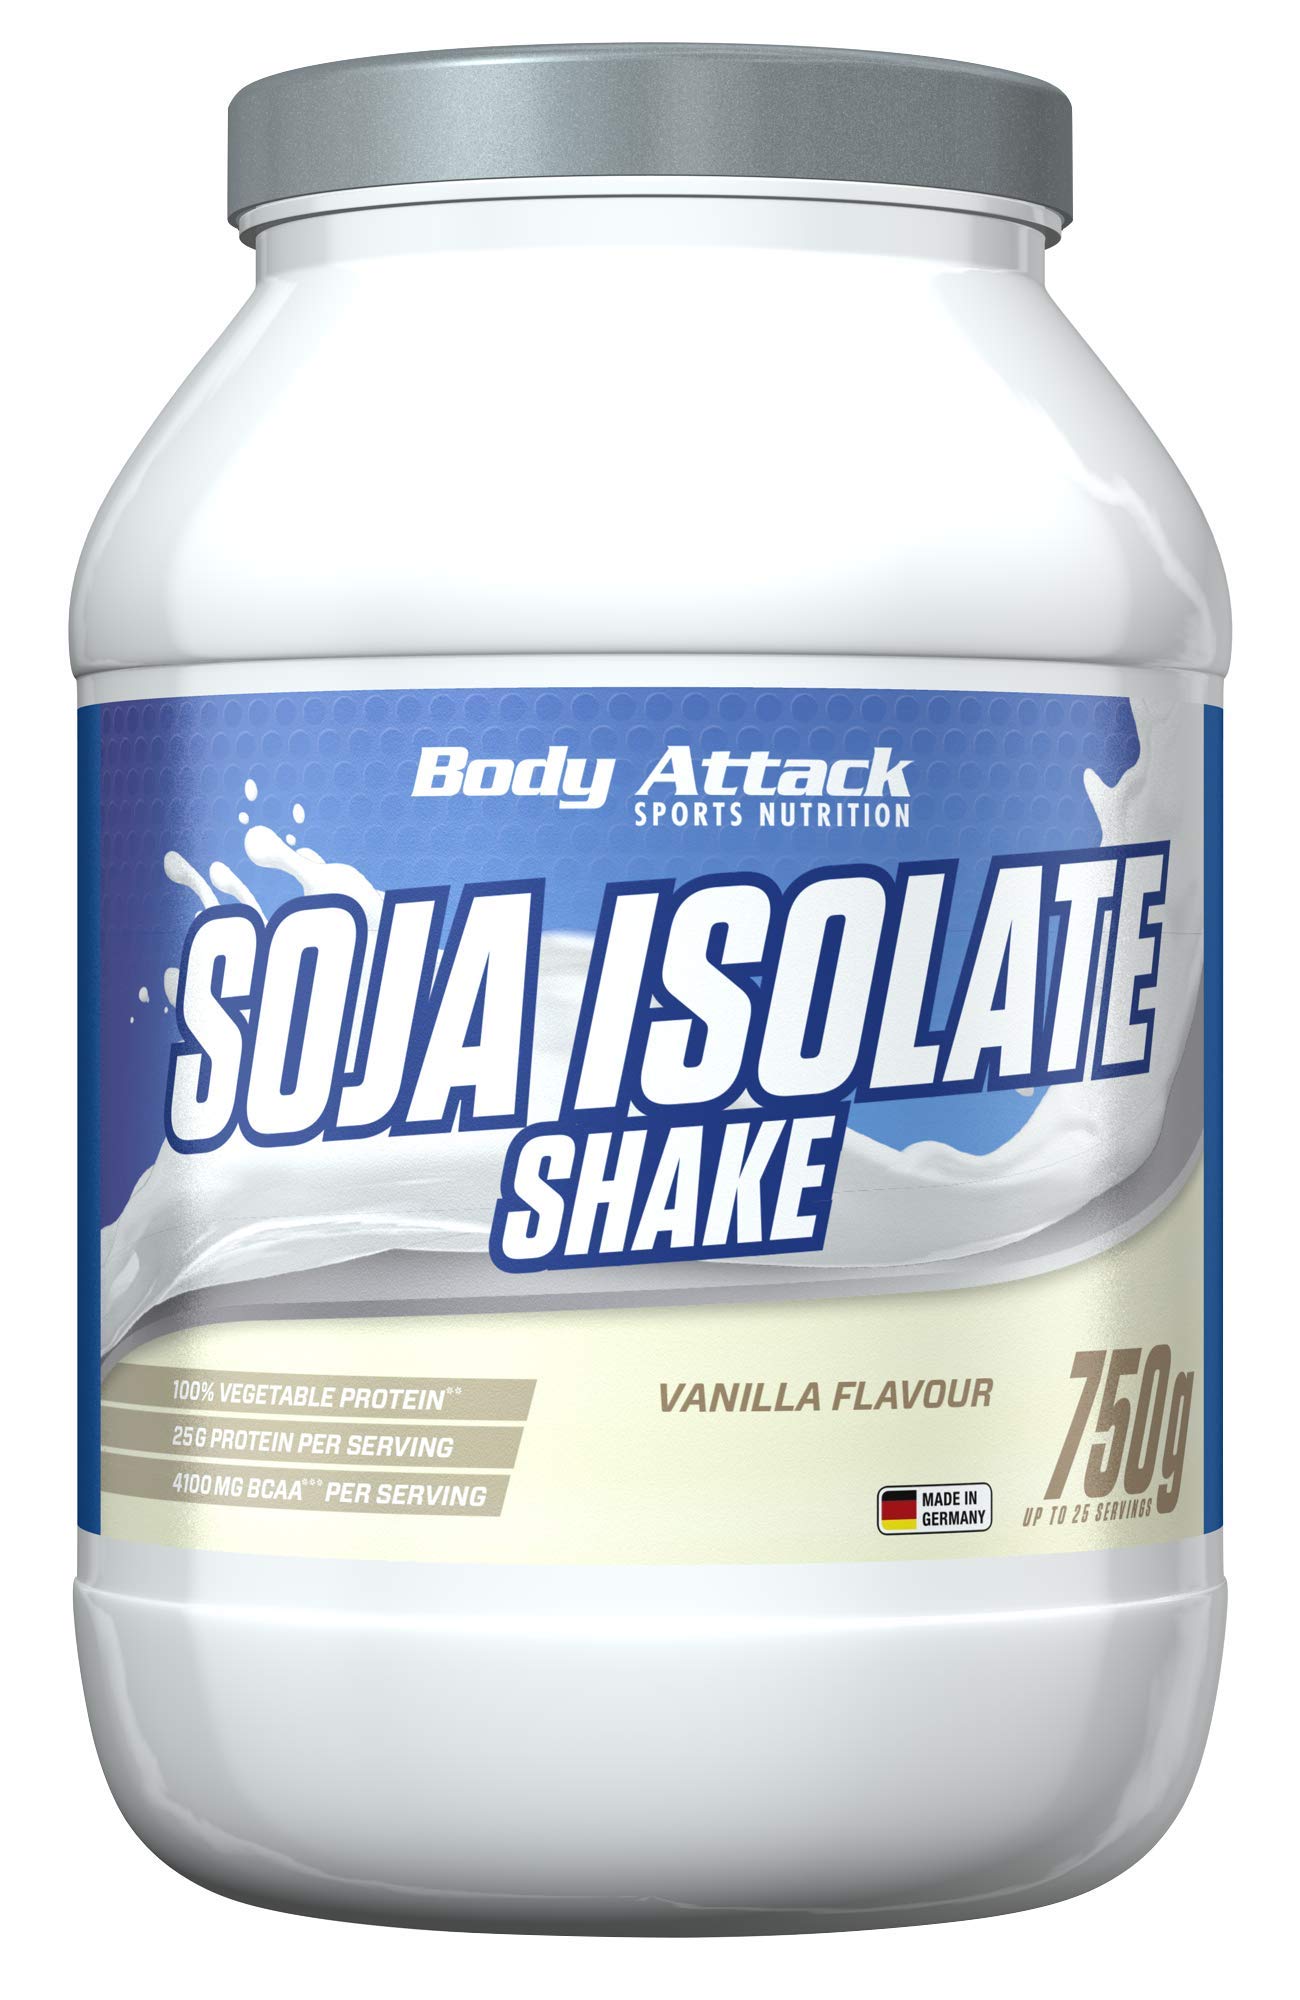 Body Attack Soja Isolate Shake, Vanilla, 1er Pack (1 x 750g)